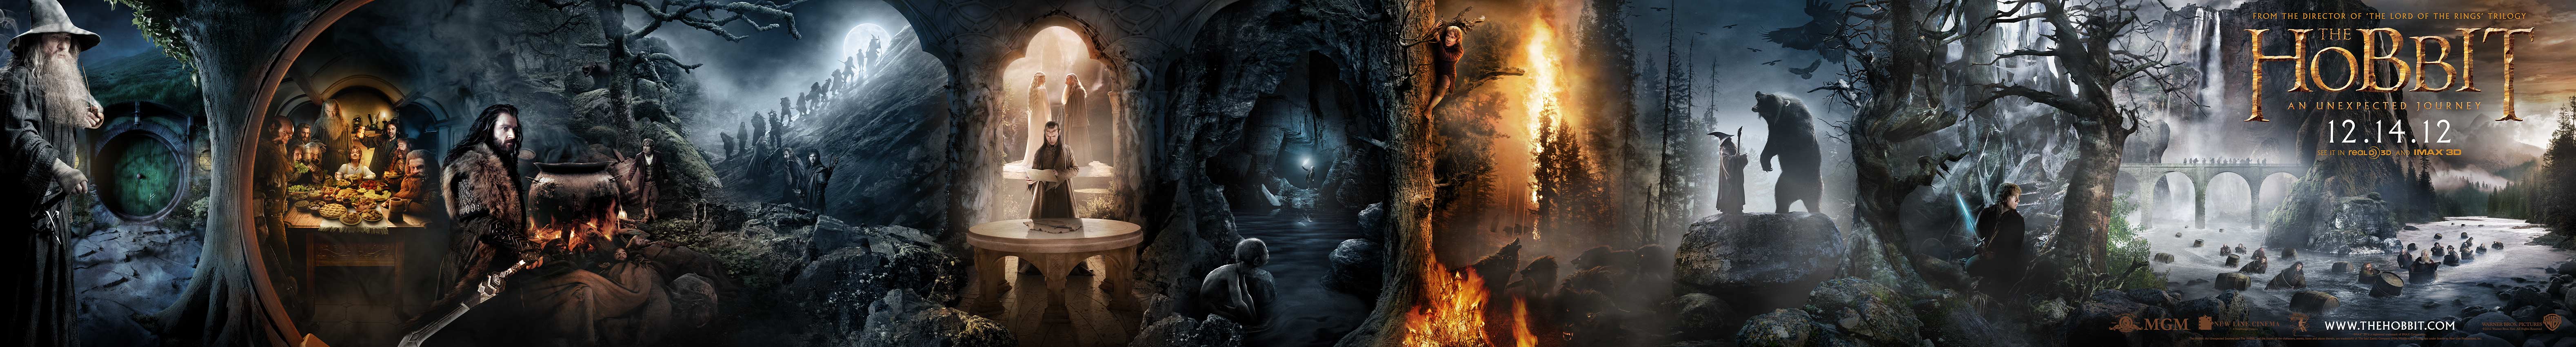 ‘The Hobbit: An Unexpected Journey’ Wallpaper Generator